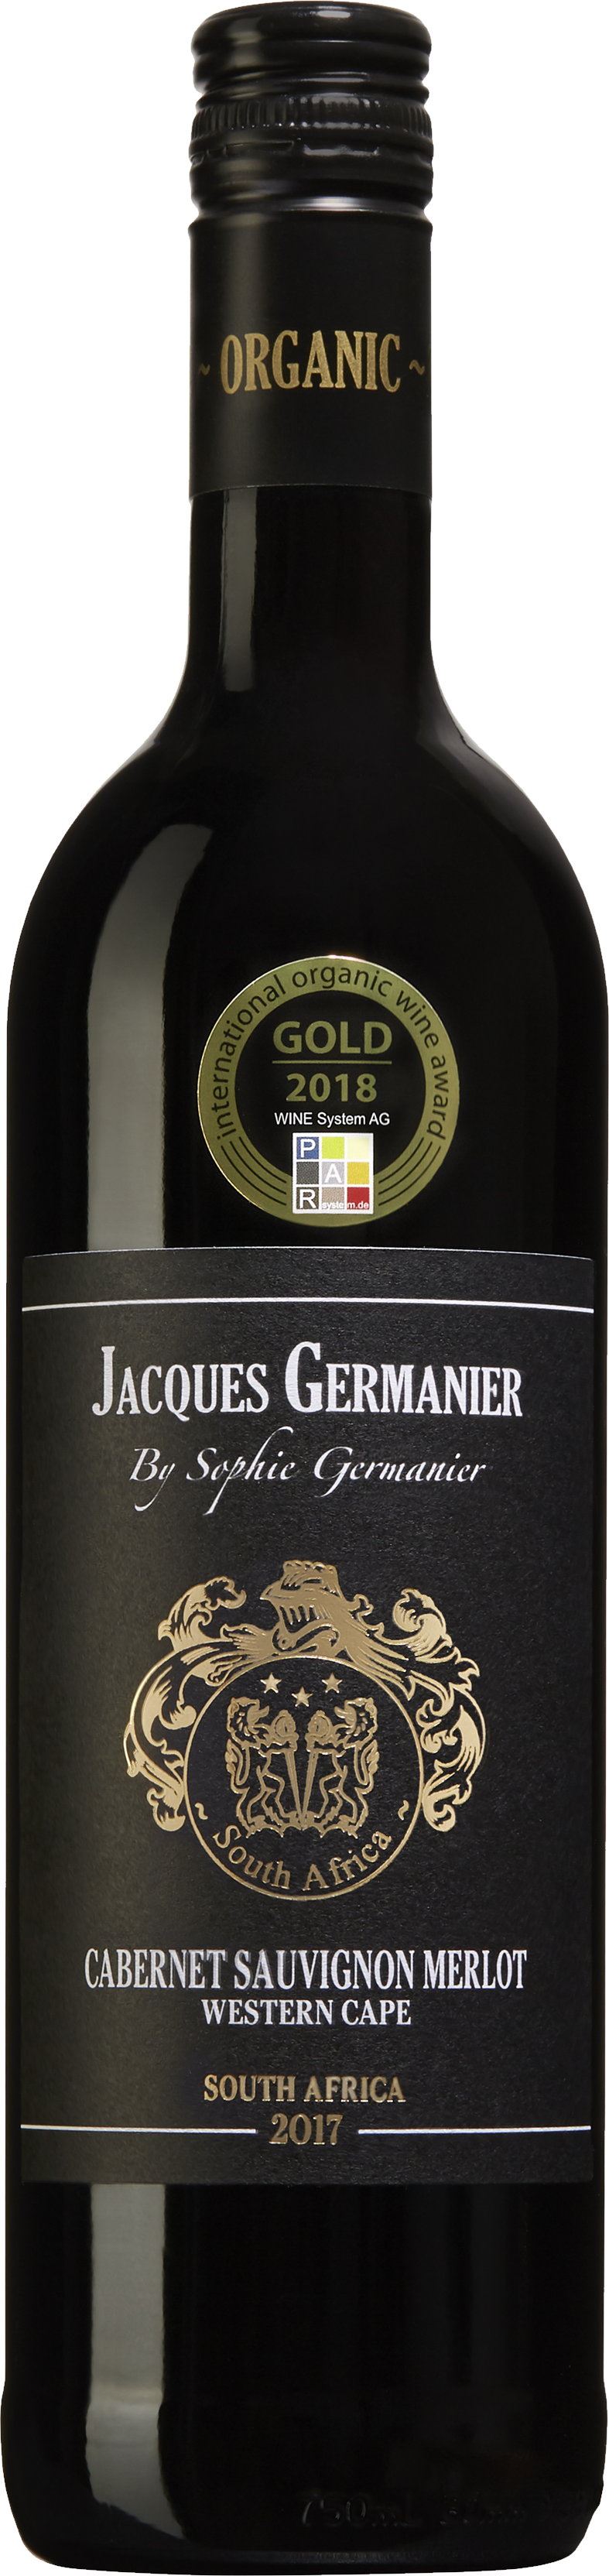 Jacques Germanier, Cabernet Sauvignon Merlot, 2020 (prissänkt med 35%) -  Rött, Vin - Vinbörsen